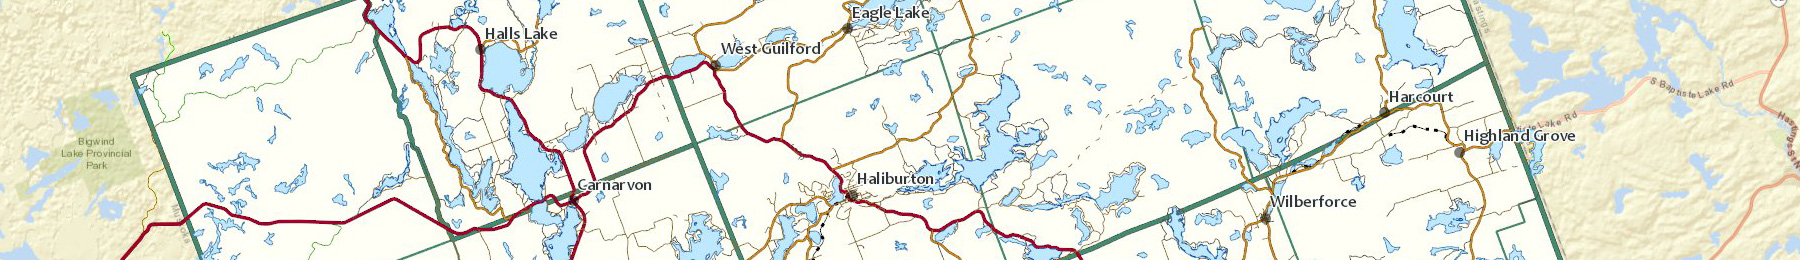 haliburton county gis map